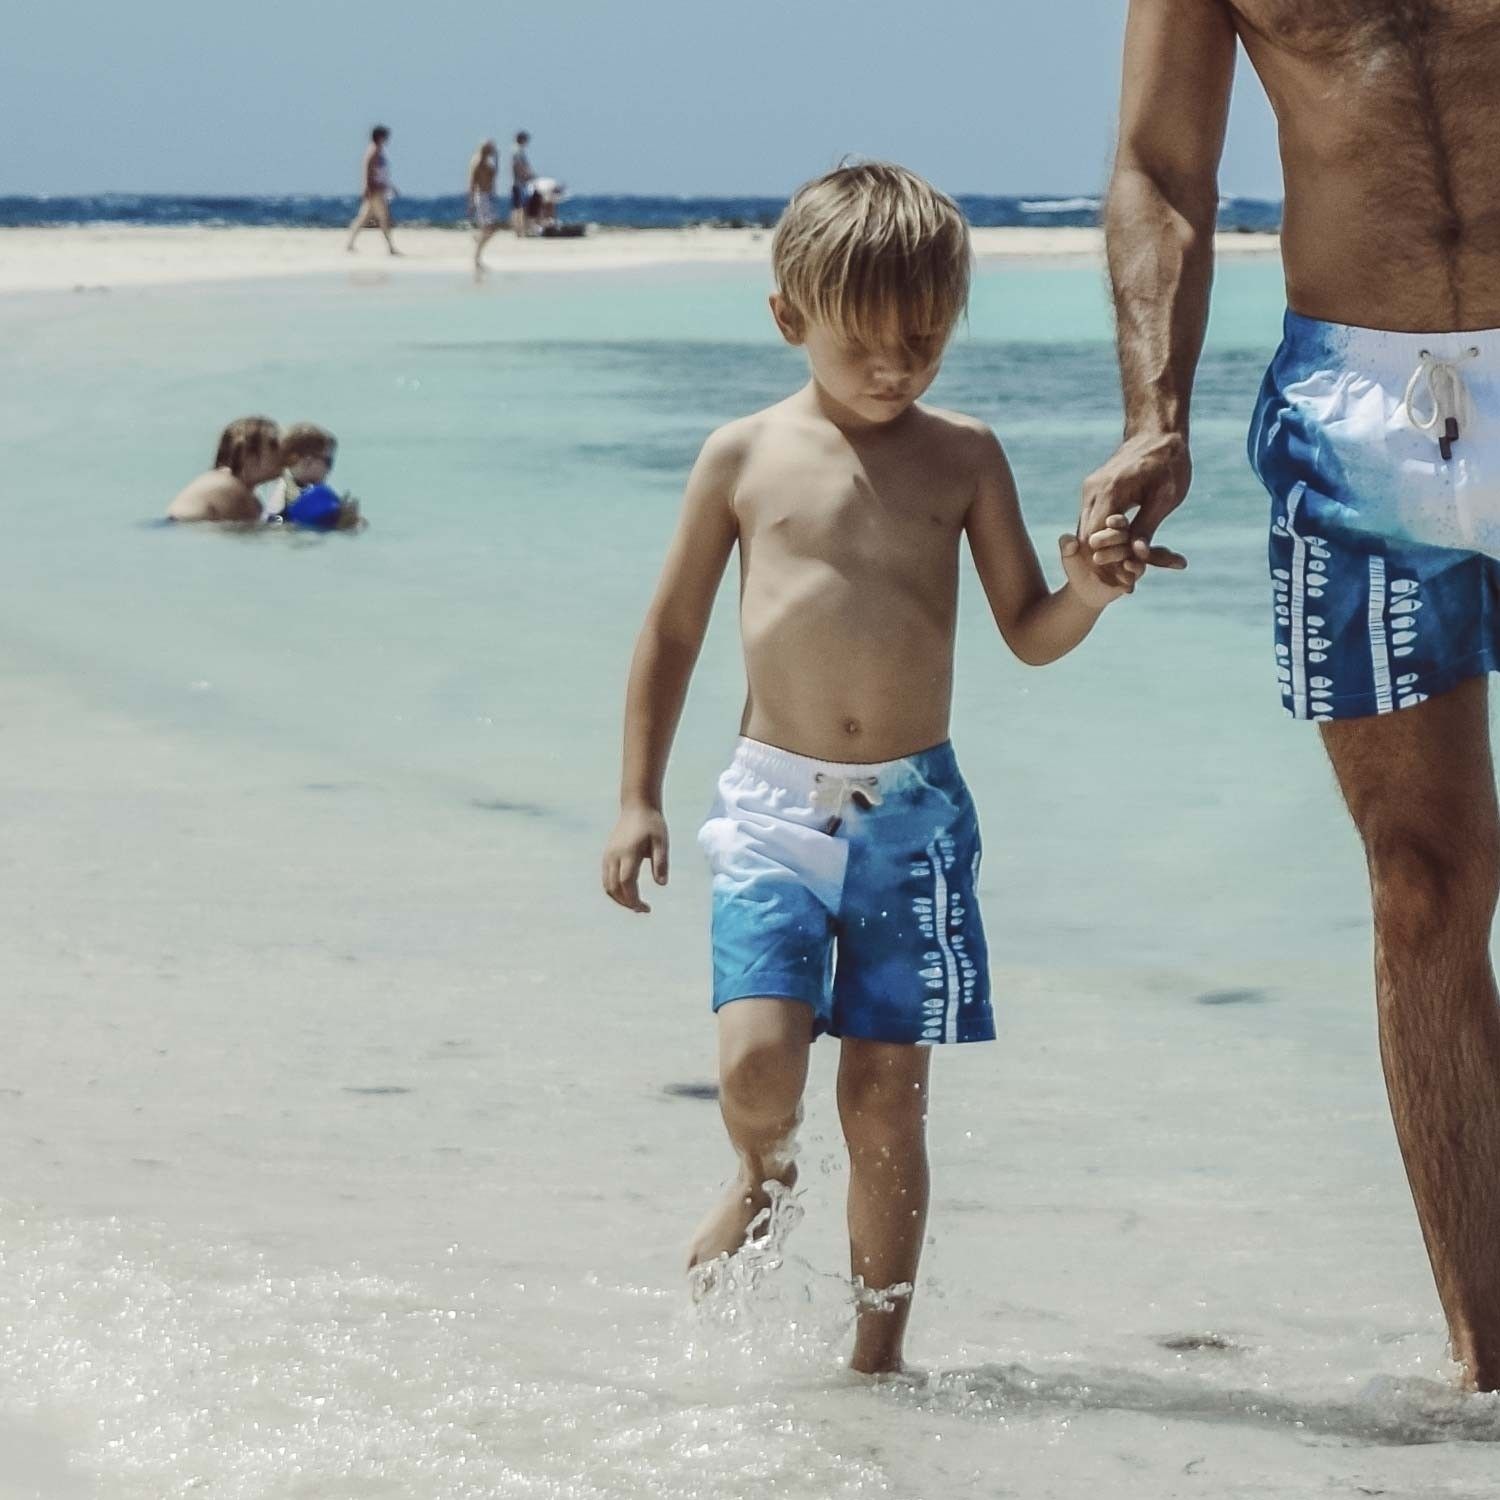 amplitude tiener Serena Vader & Zoon zwembroek - Dezelfde zwembroek voor zowel vader als zoon |  Sanwin Beachwear | Sanwin Beachwear